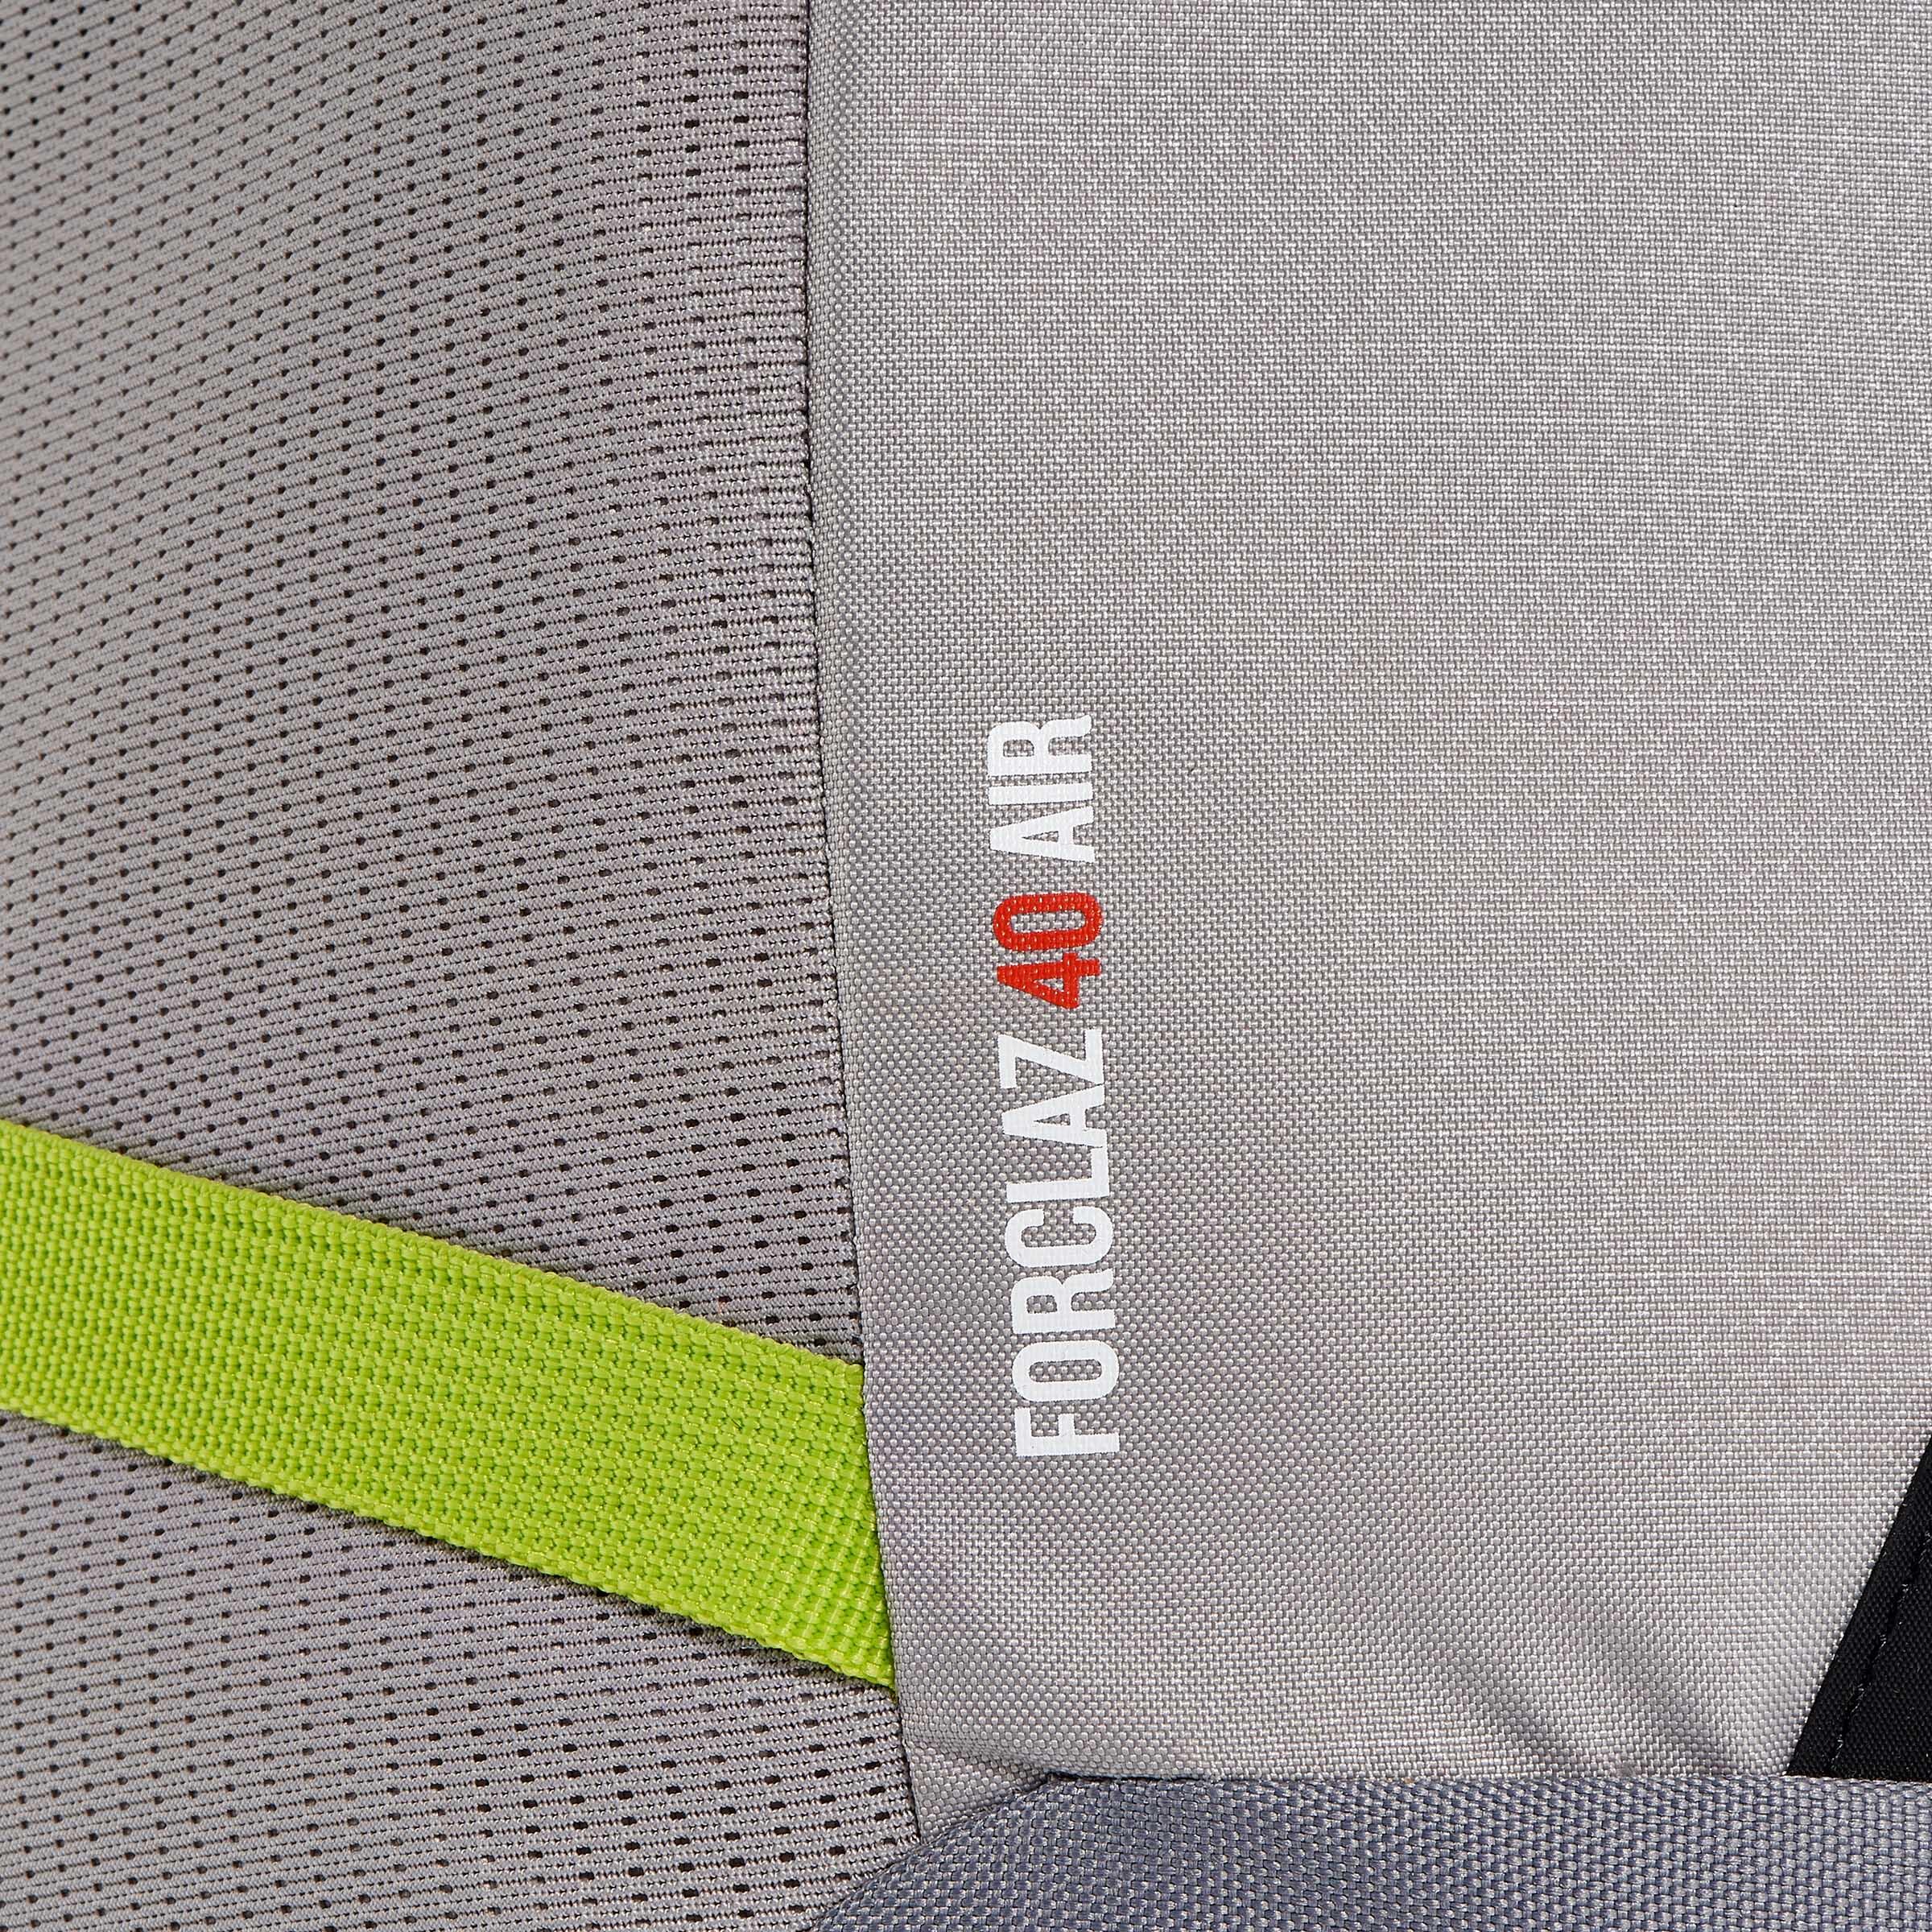 FORCLAZ 40 AIR backpack BLUE: AIR COOLING Label - regulates back perspiration 13/19